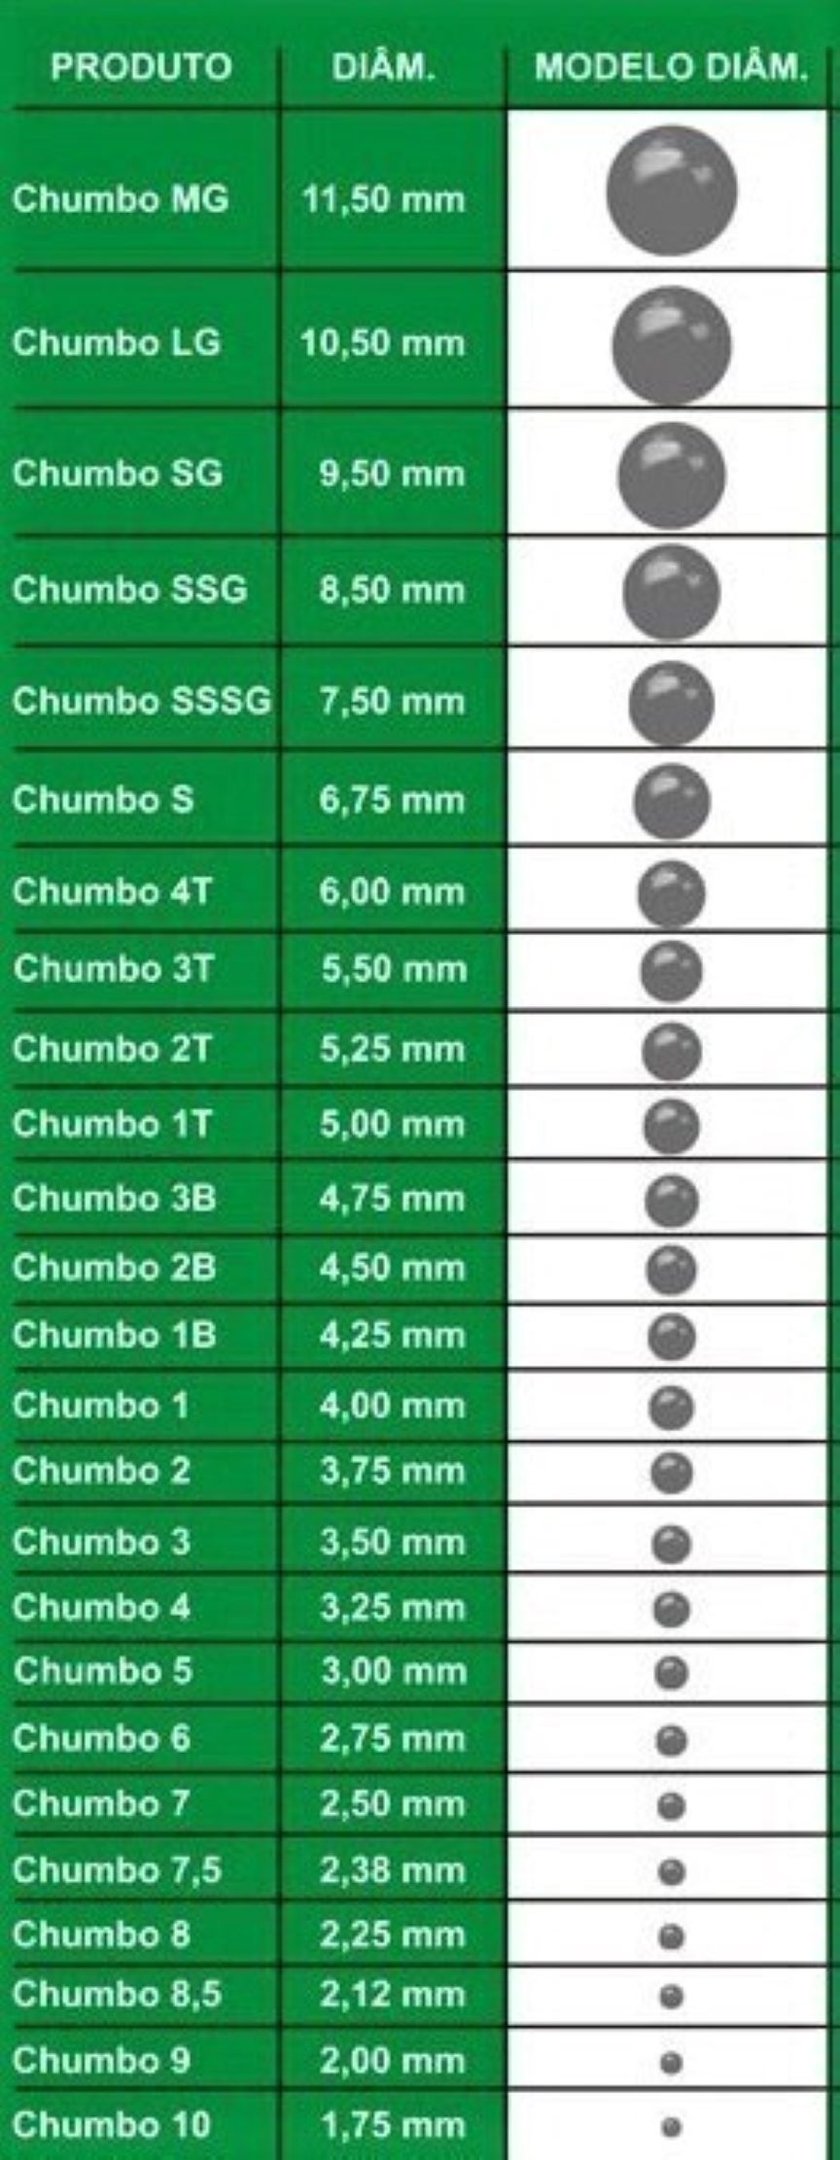 Chumbo esférico granulado número S com diâmetro de 6,75 mm - 6